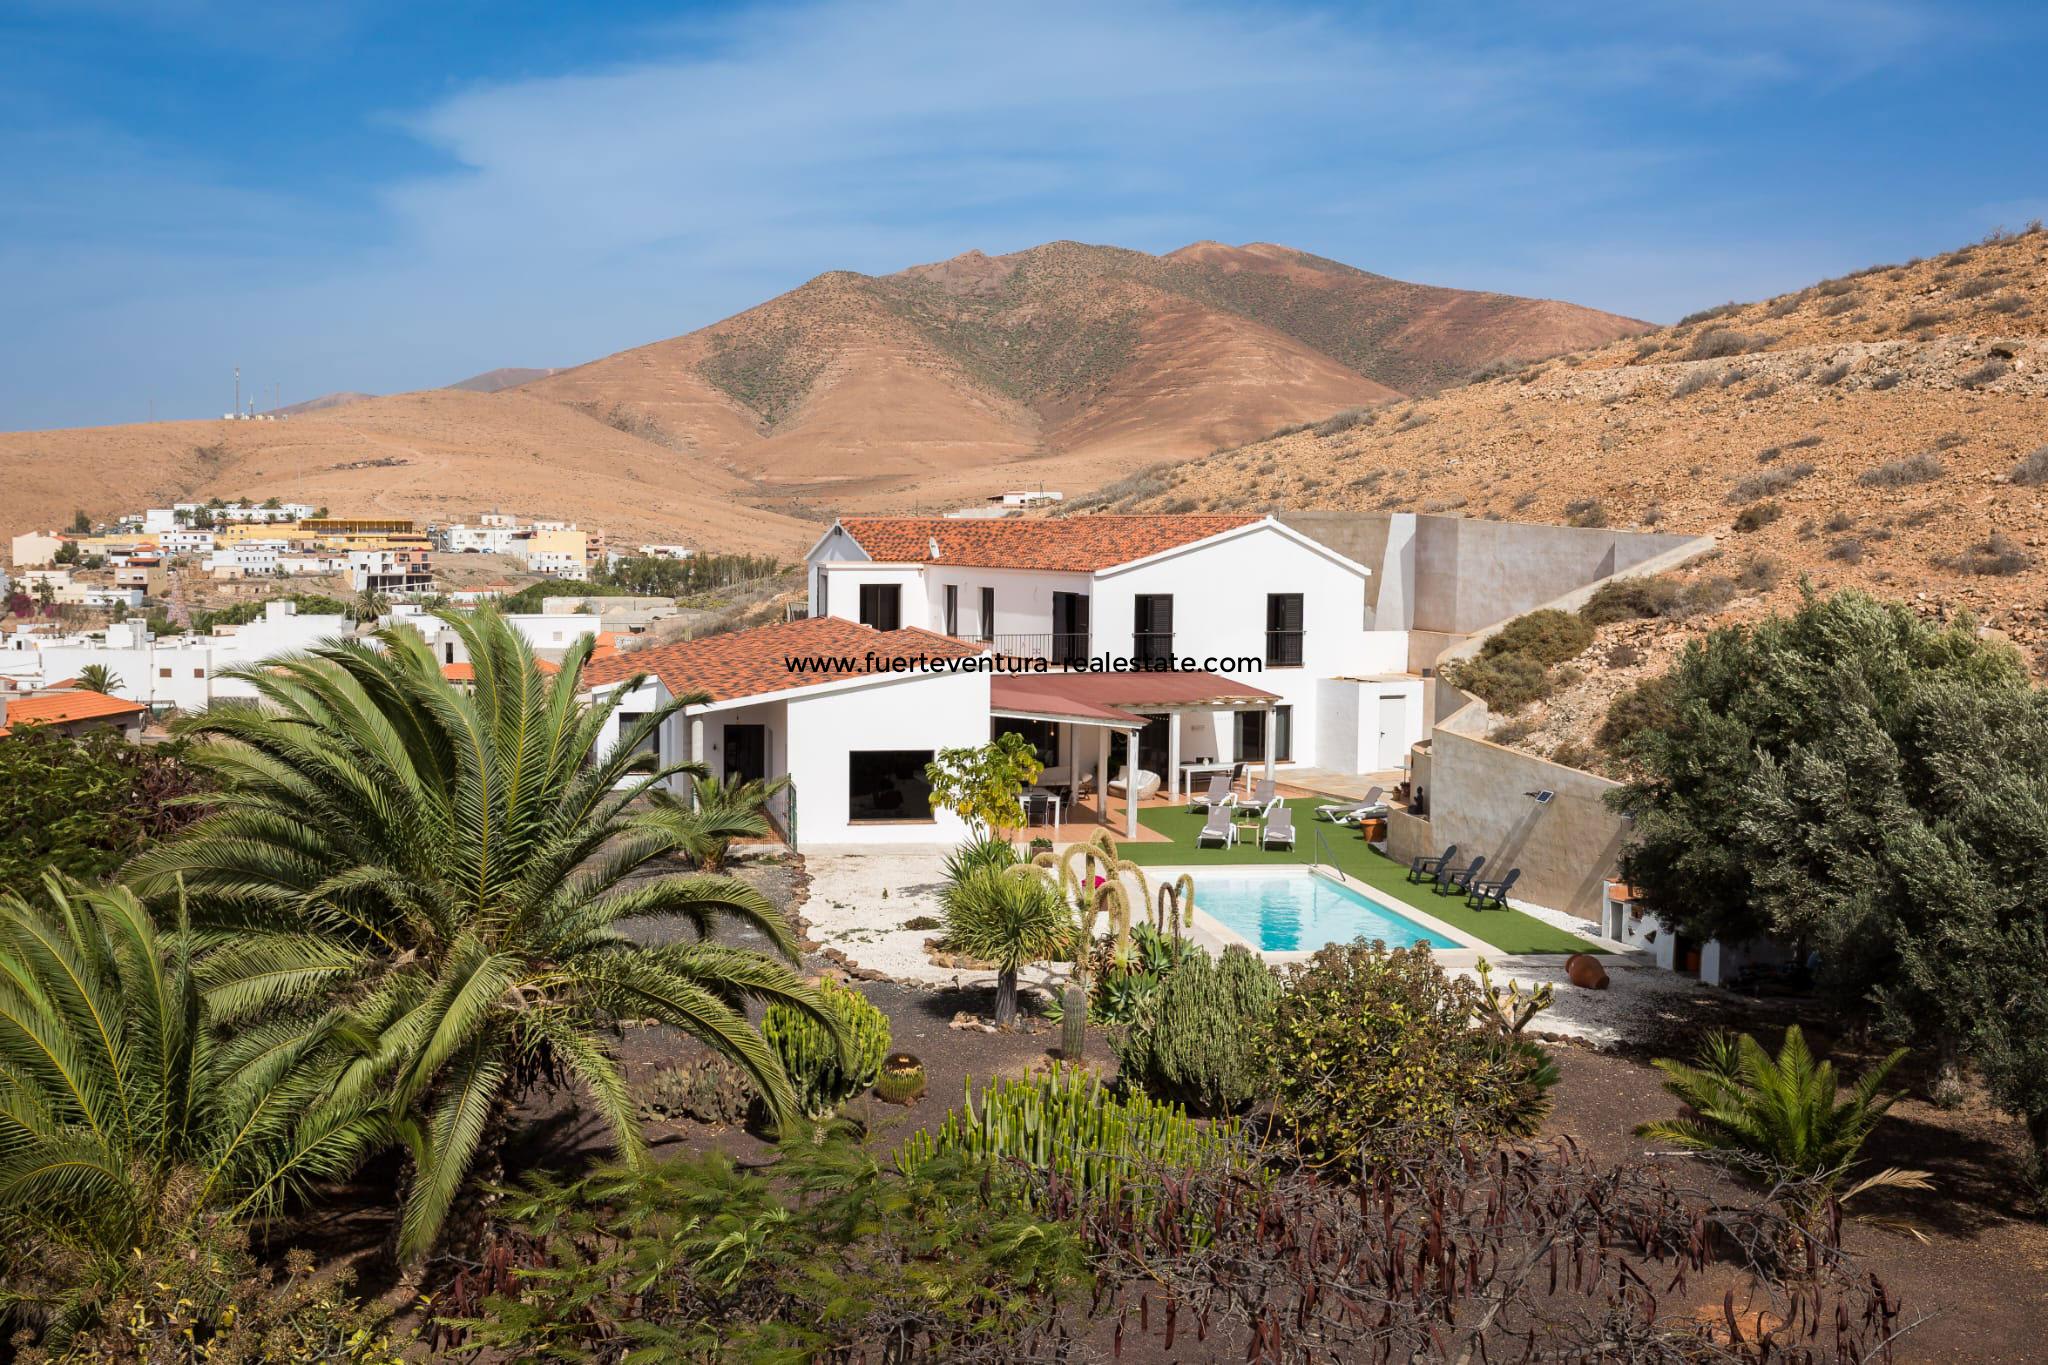 En vente! Belle propriété située à Pajara au sud de Fuerteventura